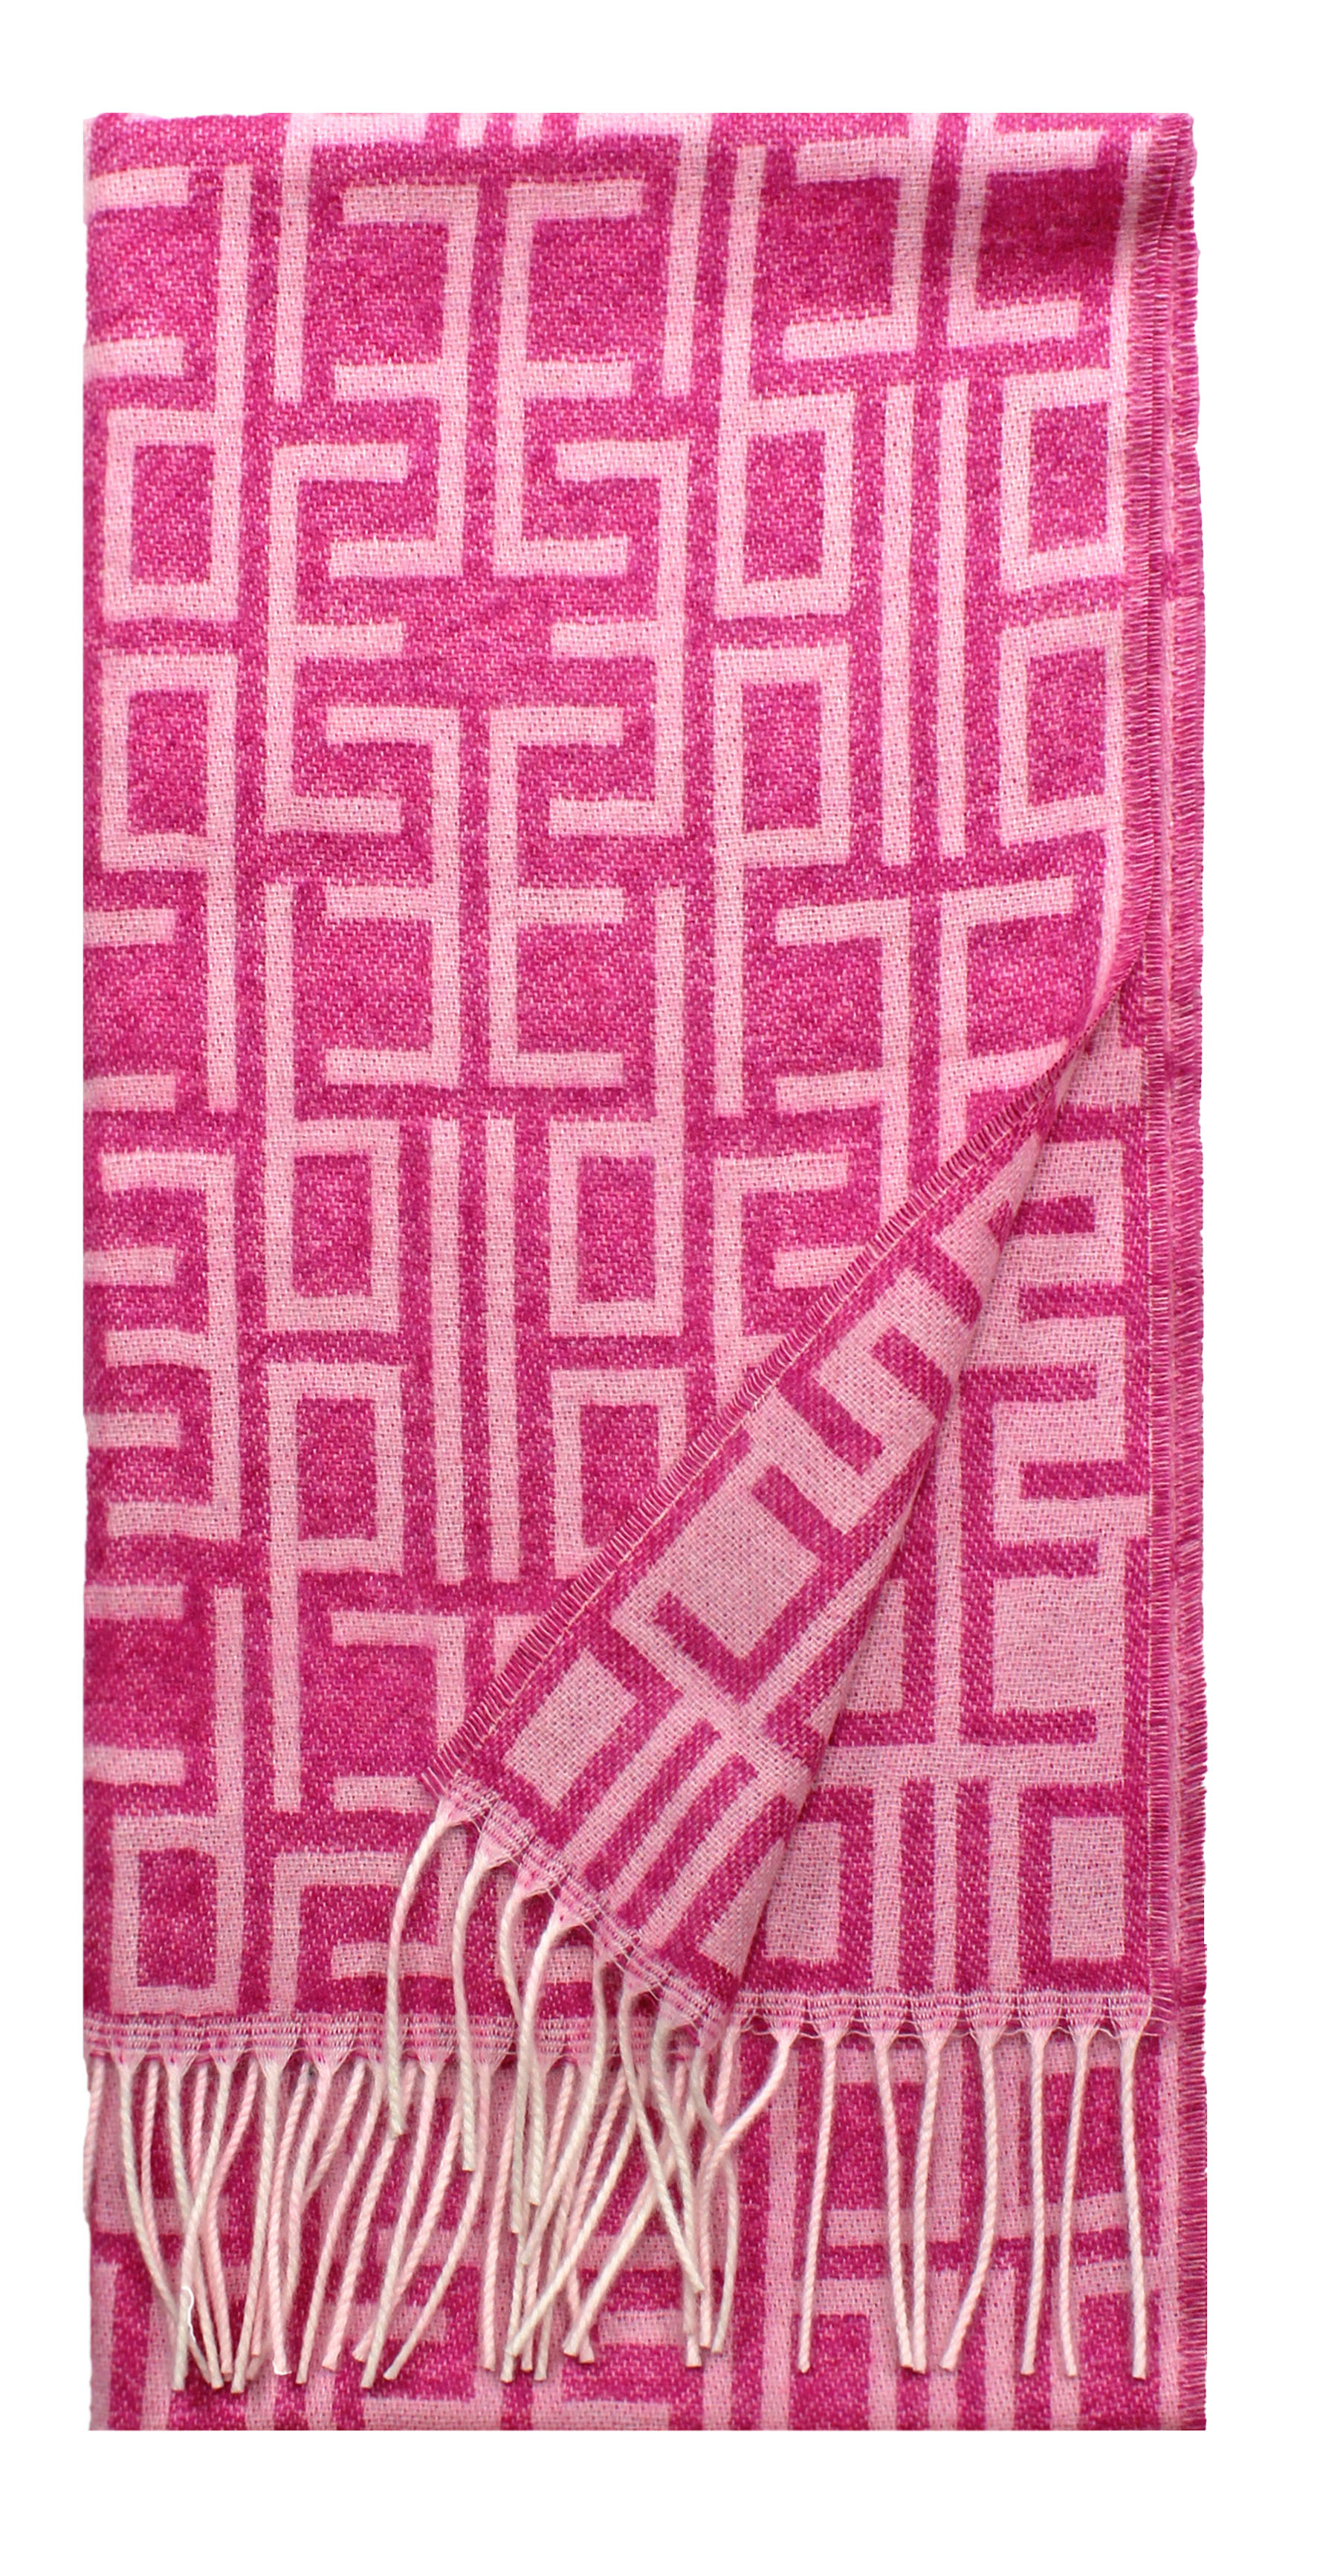 Bild von 031-0035-2_2, Variante puder-pink